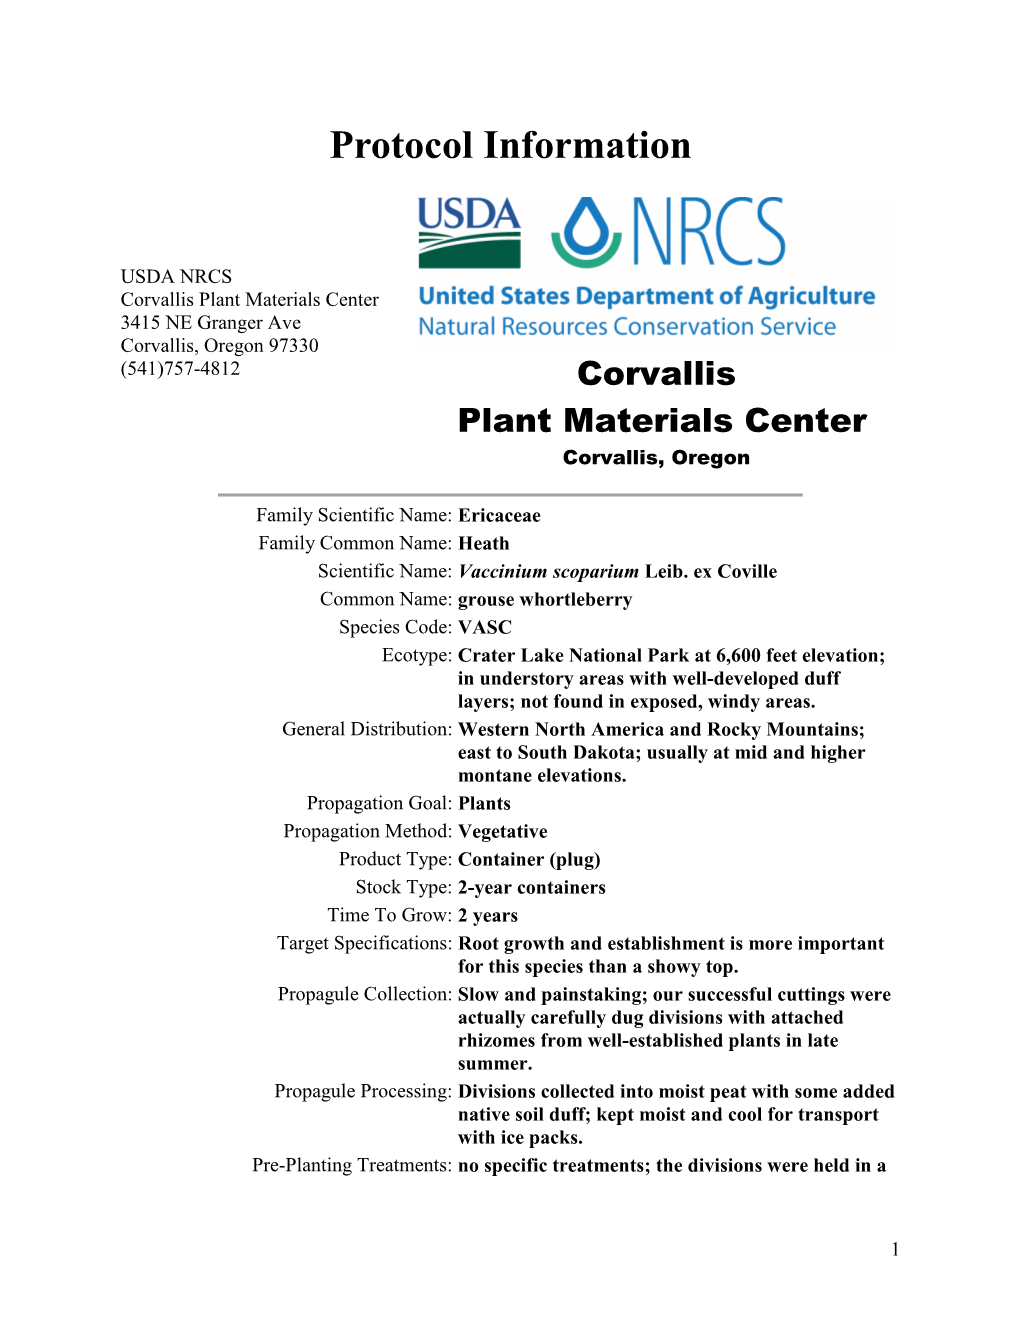 Propagation Protocol for Vegetative Production of Container Vaccinium Scoparium Leib